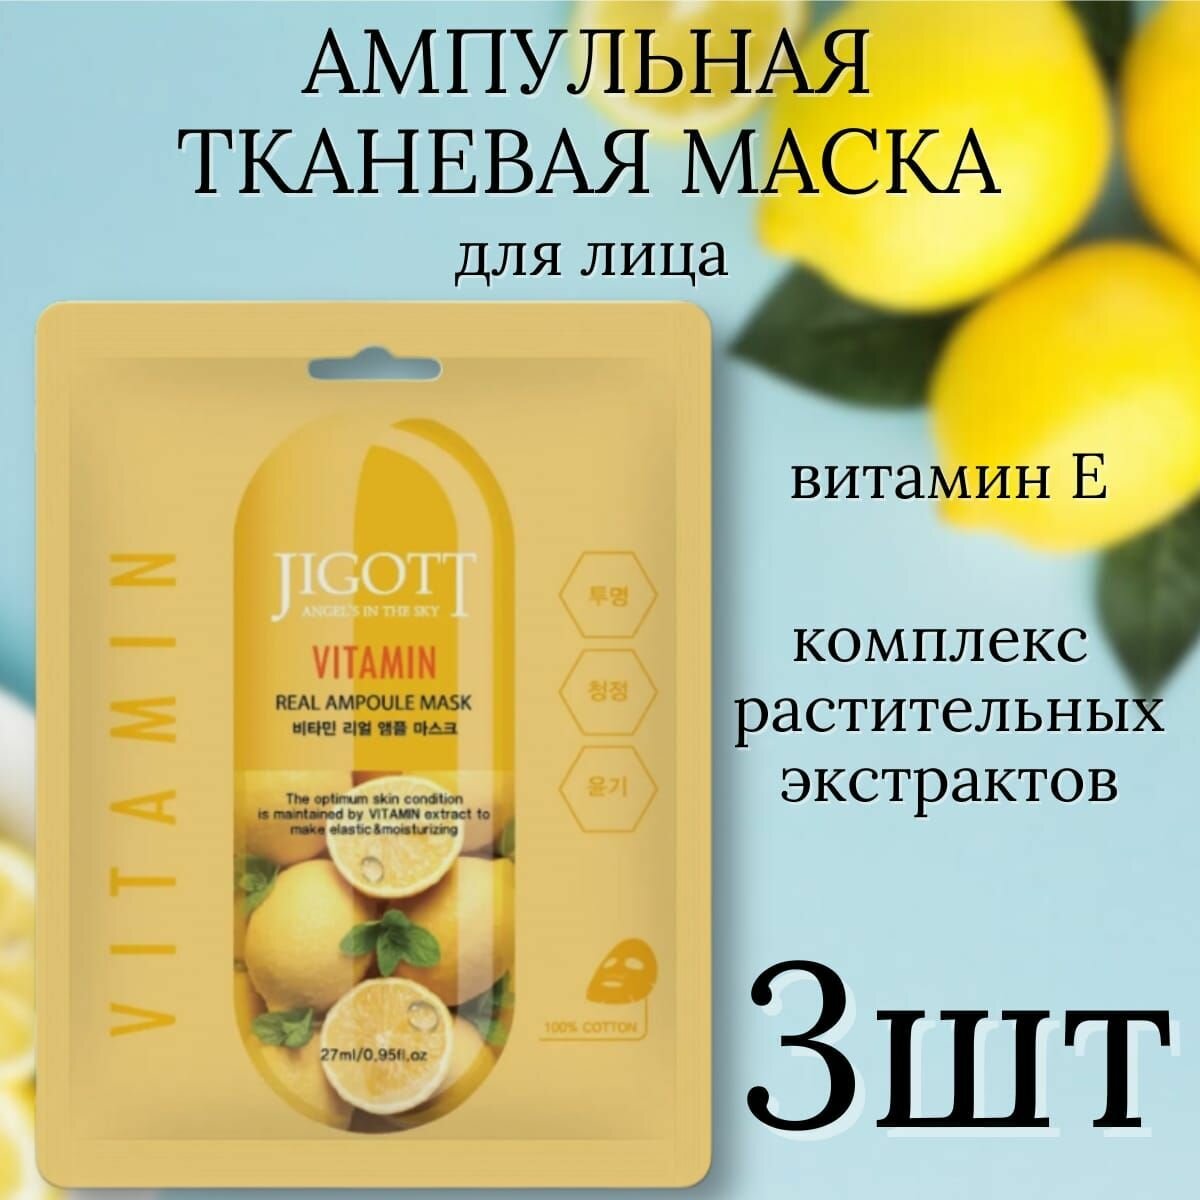 Питающая маска для лица JIGOTT Vitamin Real, 27мл, 3шт